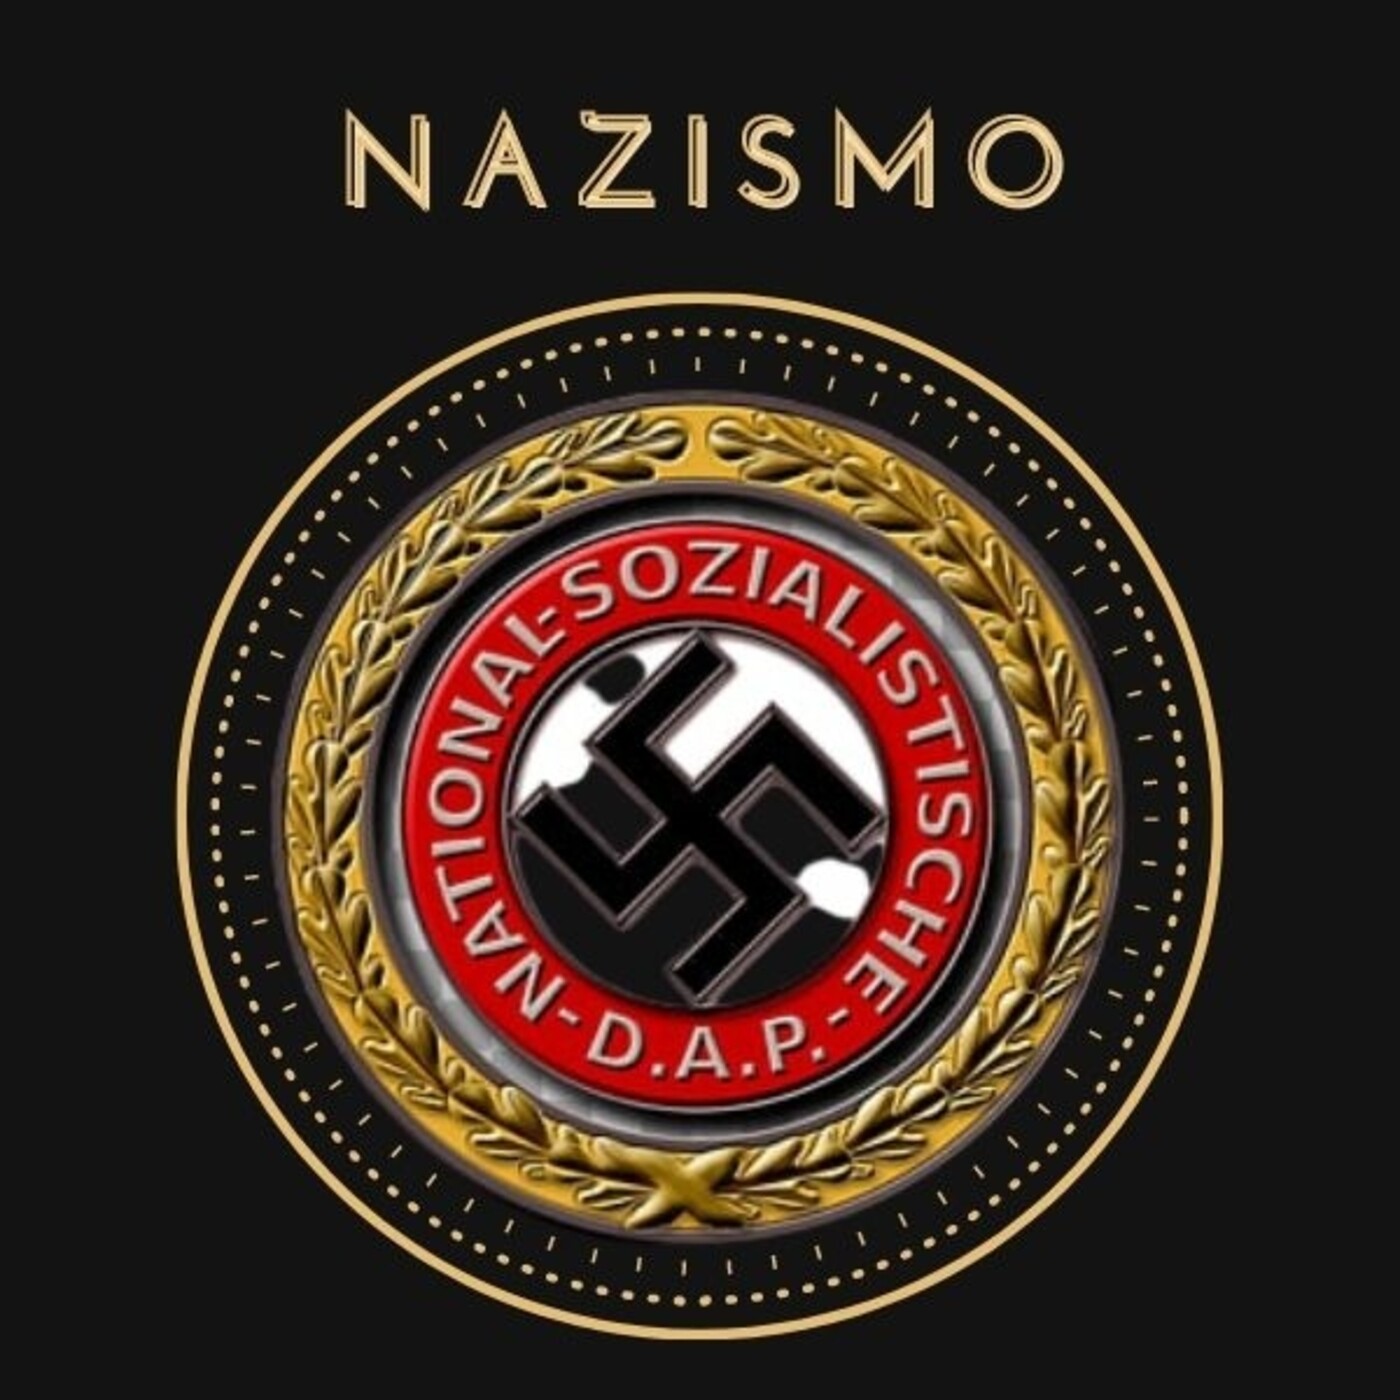 Ep. 2 Historia Oculta: Nazismo. Esoterismo y ocultismo en la Segunda Guerra Mundial.